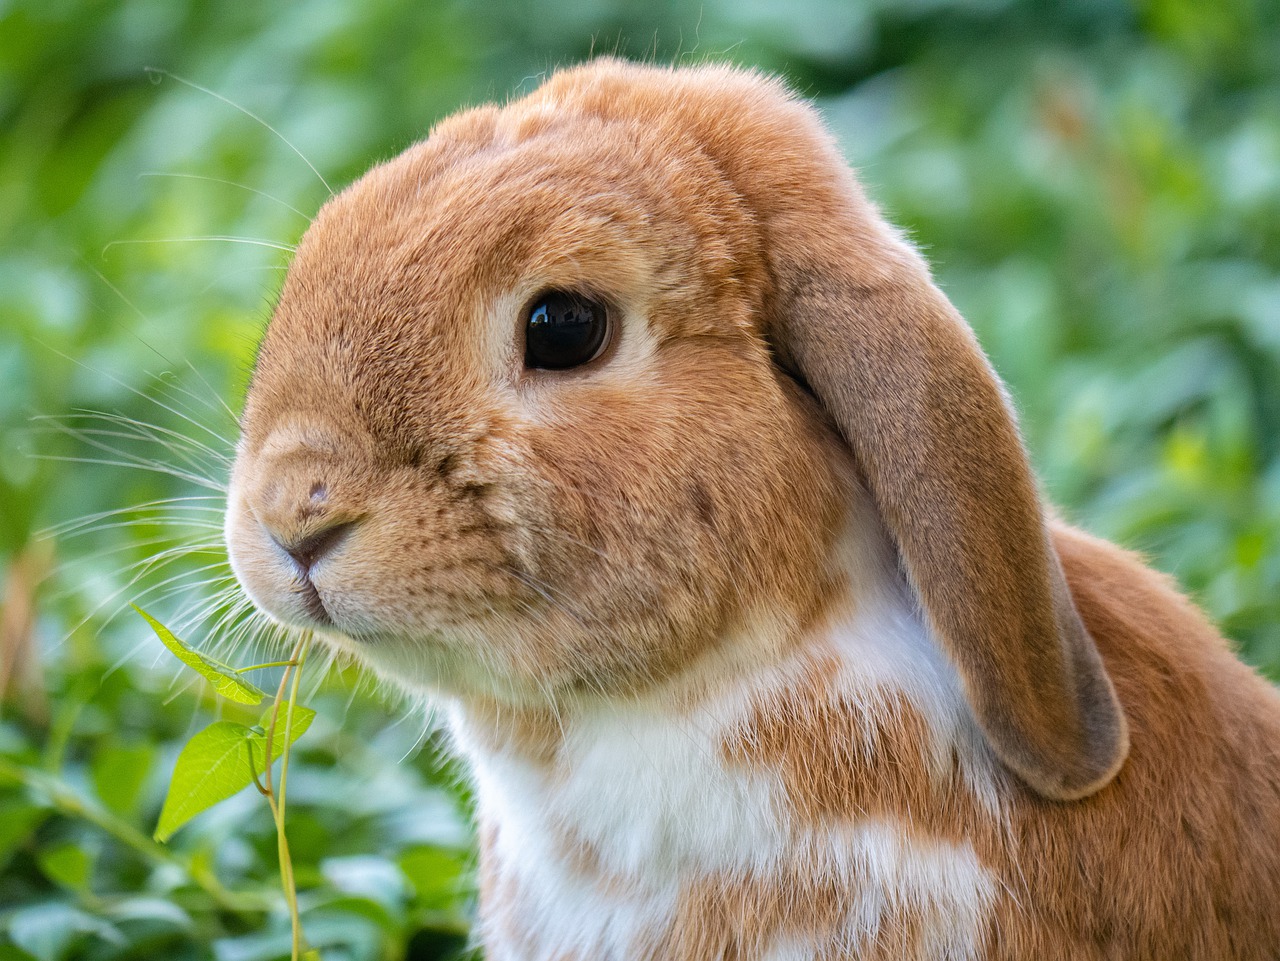 Mascotas para niños/as y padres/madres: el conejo - Azureus